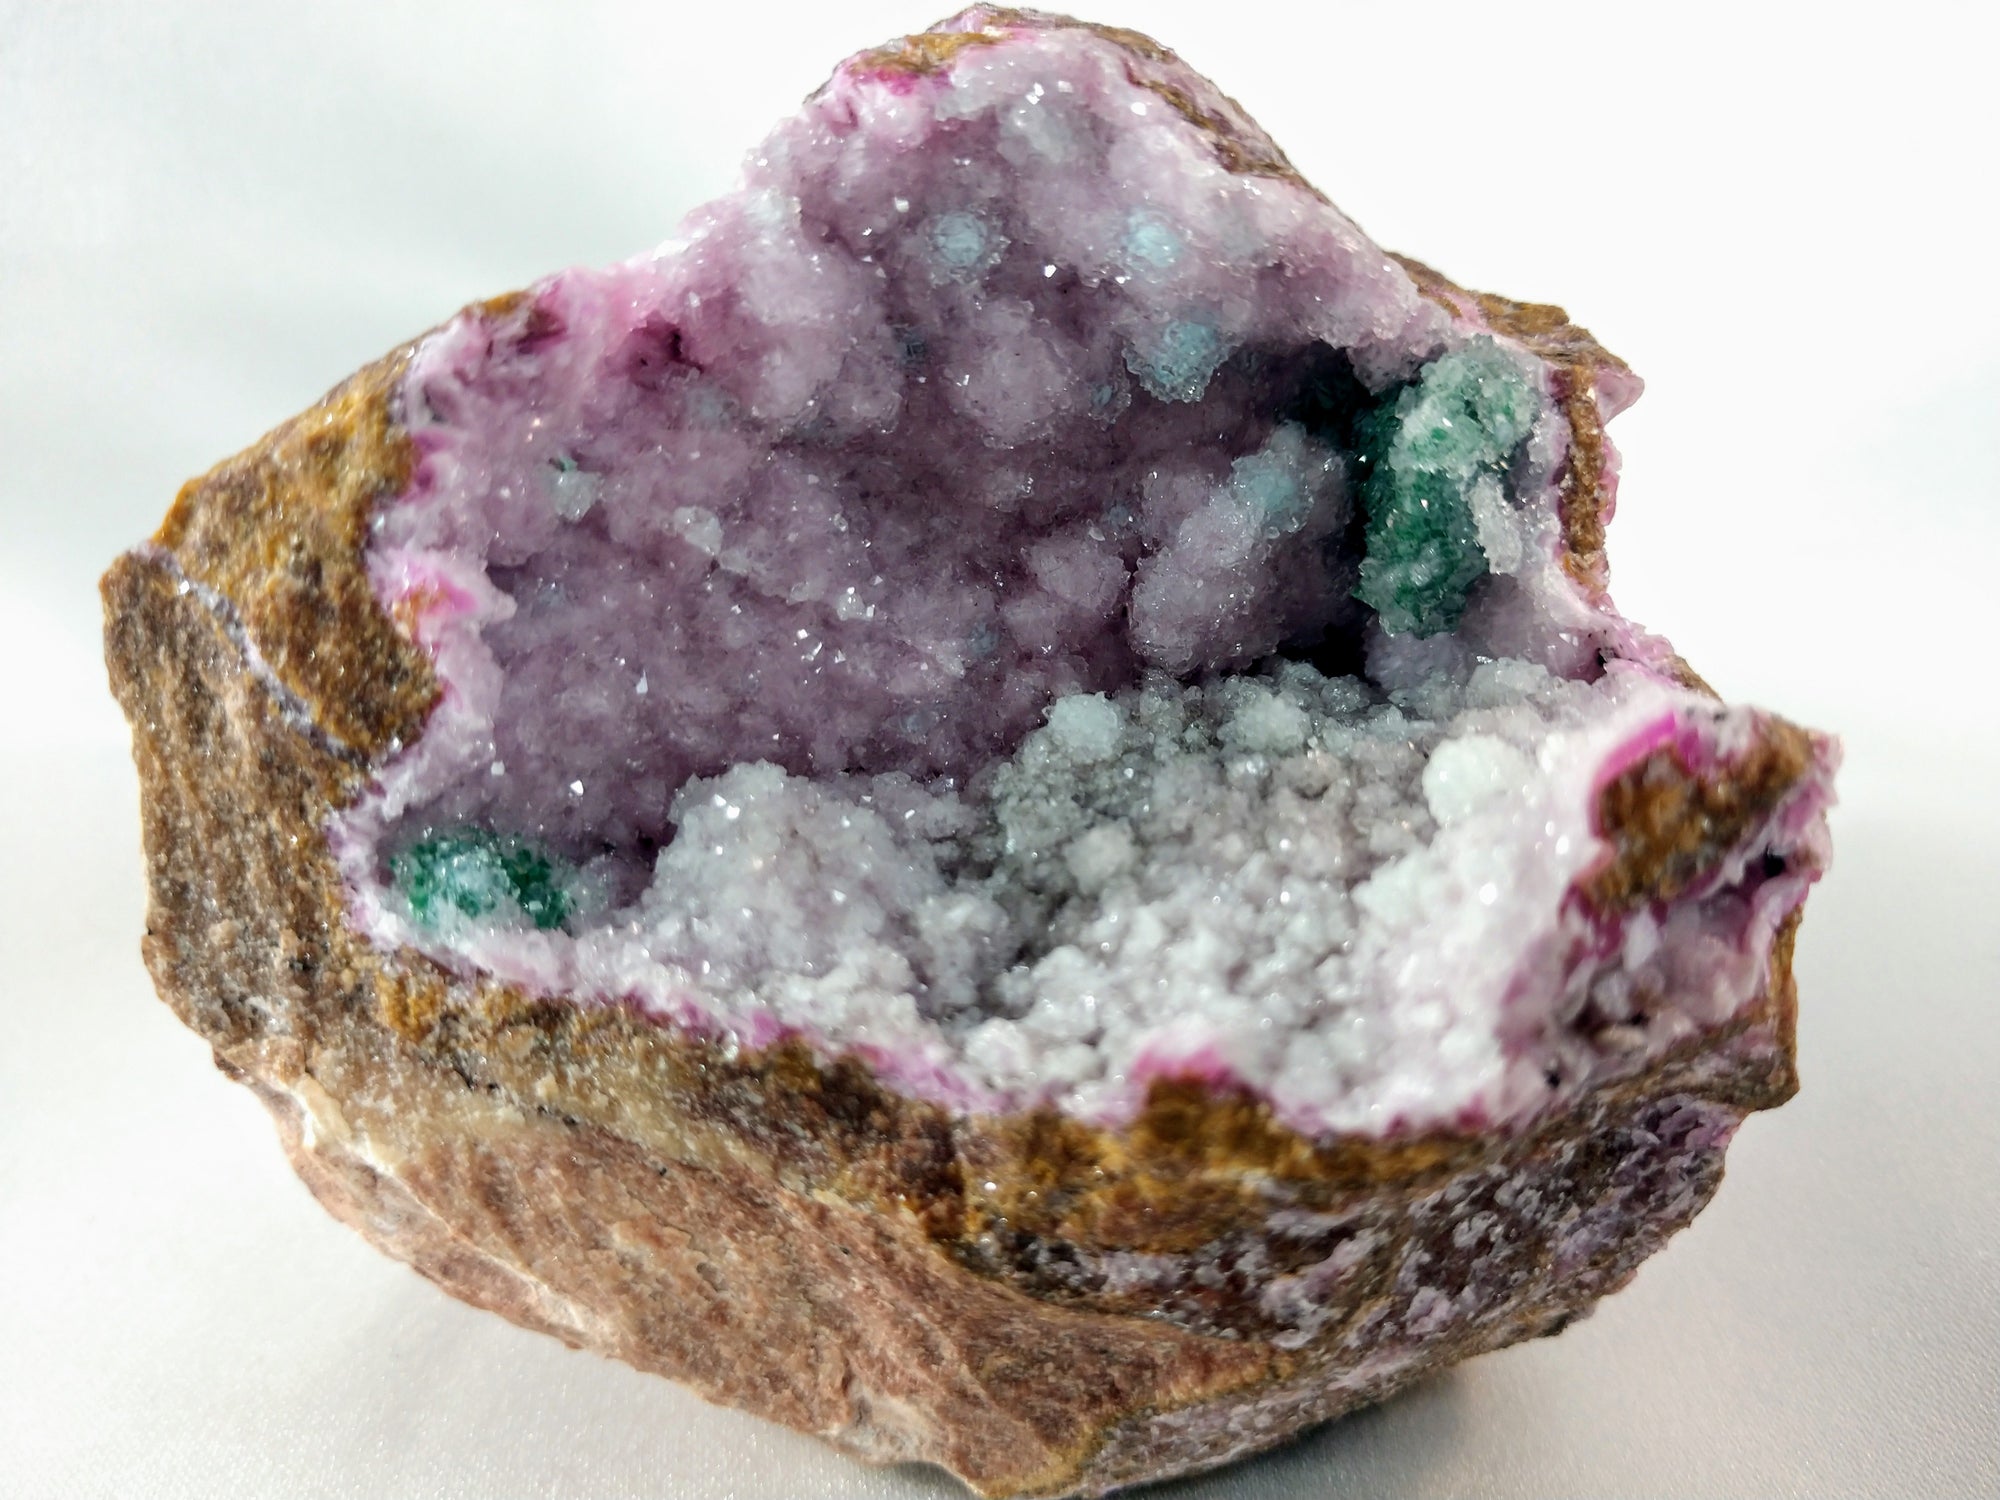 Spherocobaltite with Malachite and Quartz 